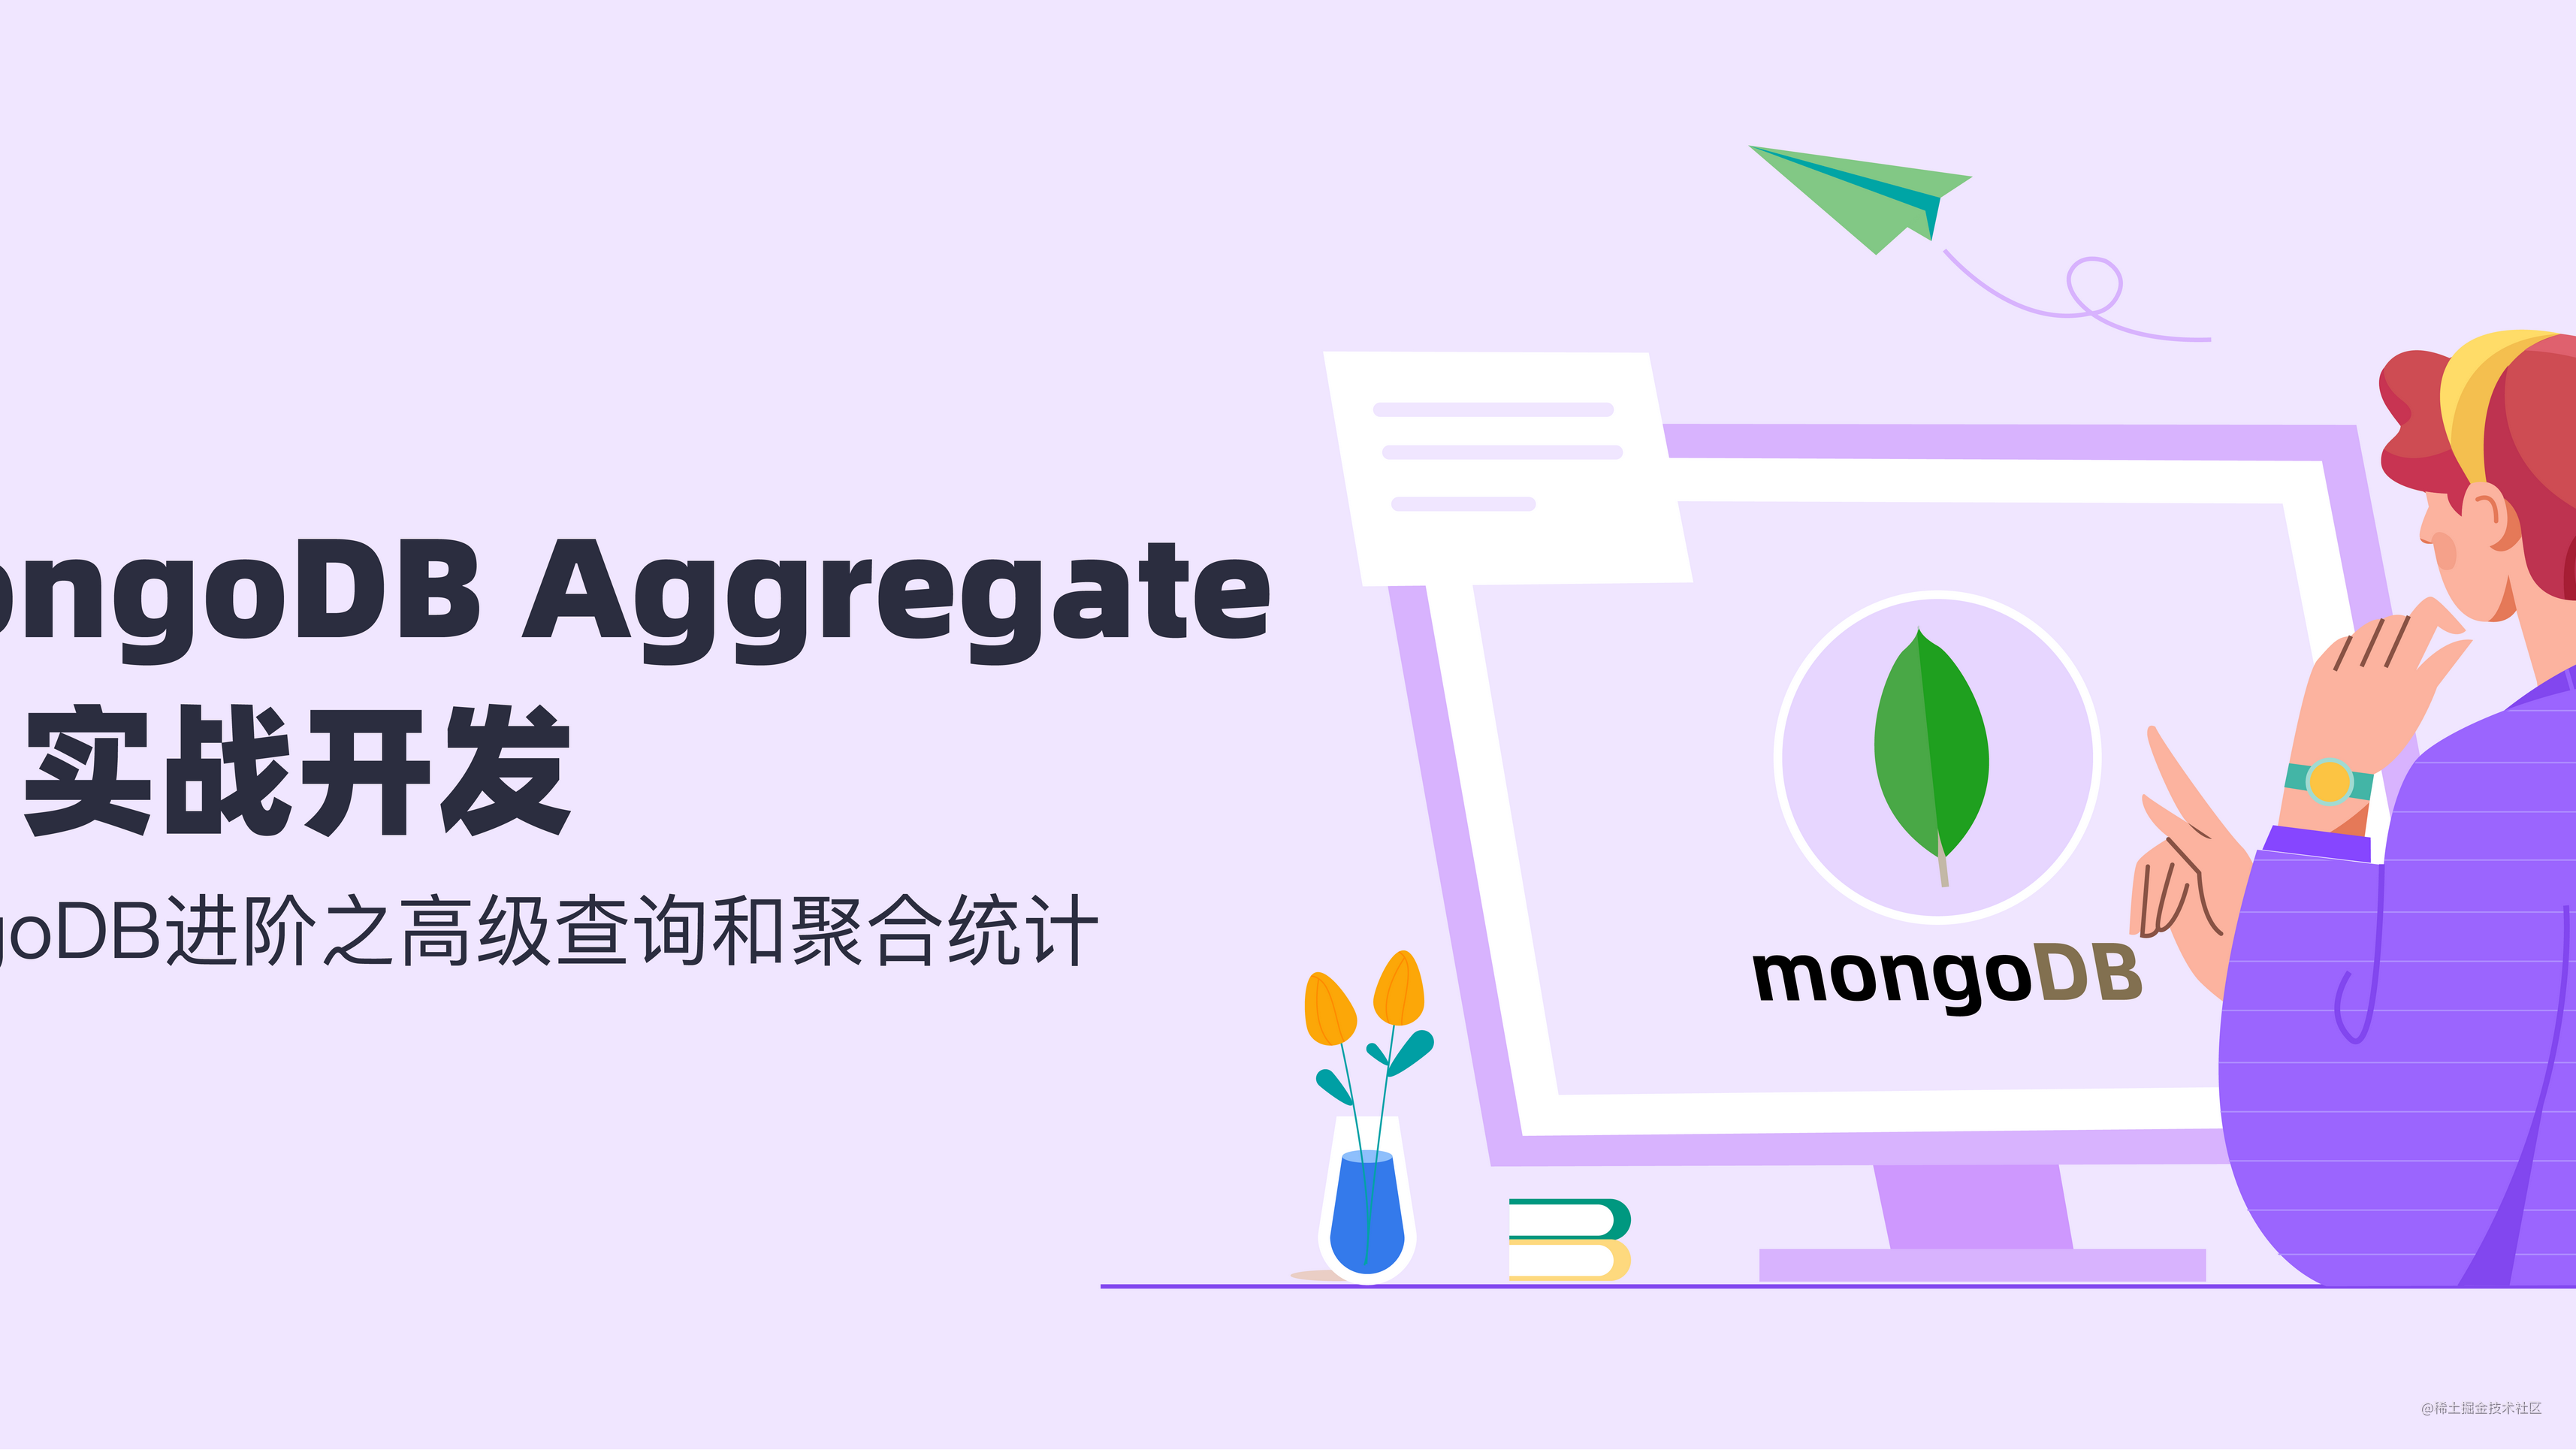 实战 MongoDB Aggregate